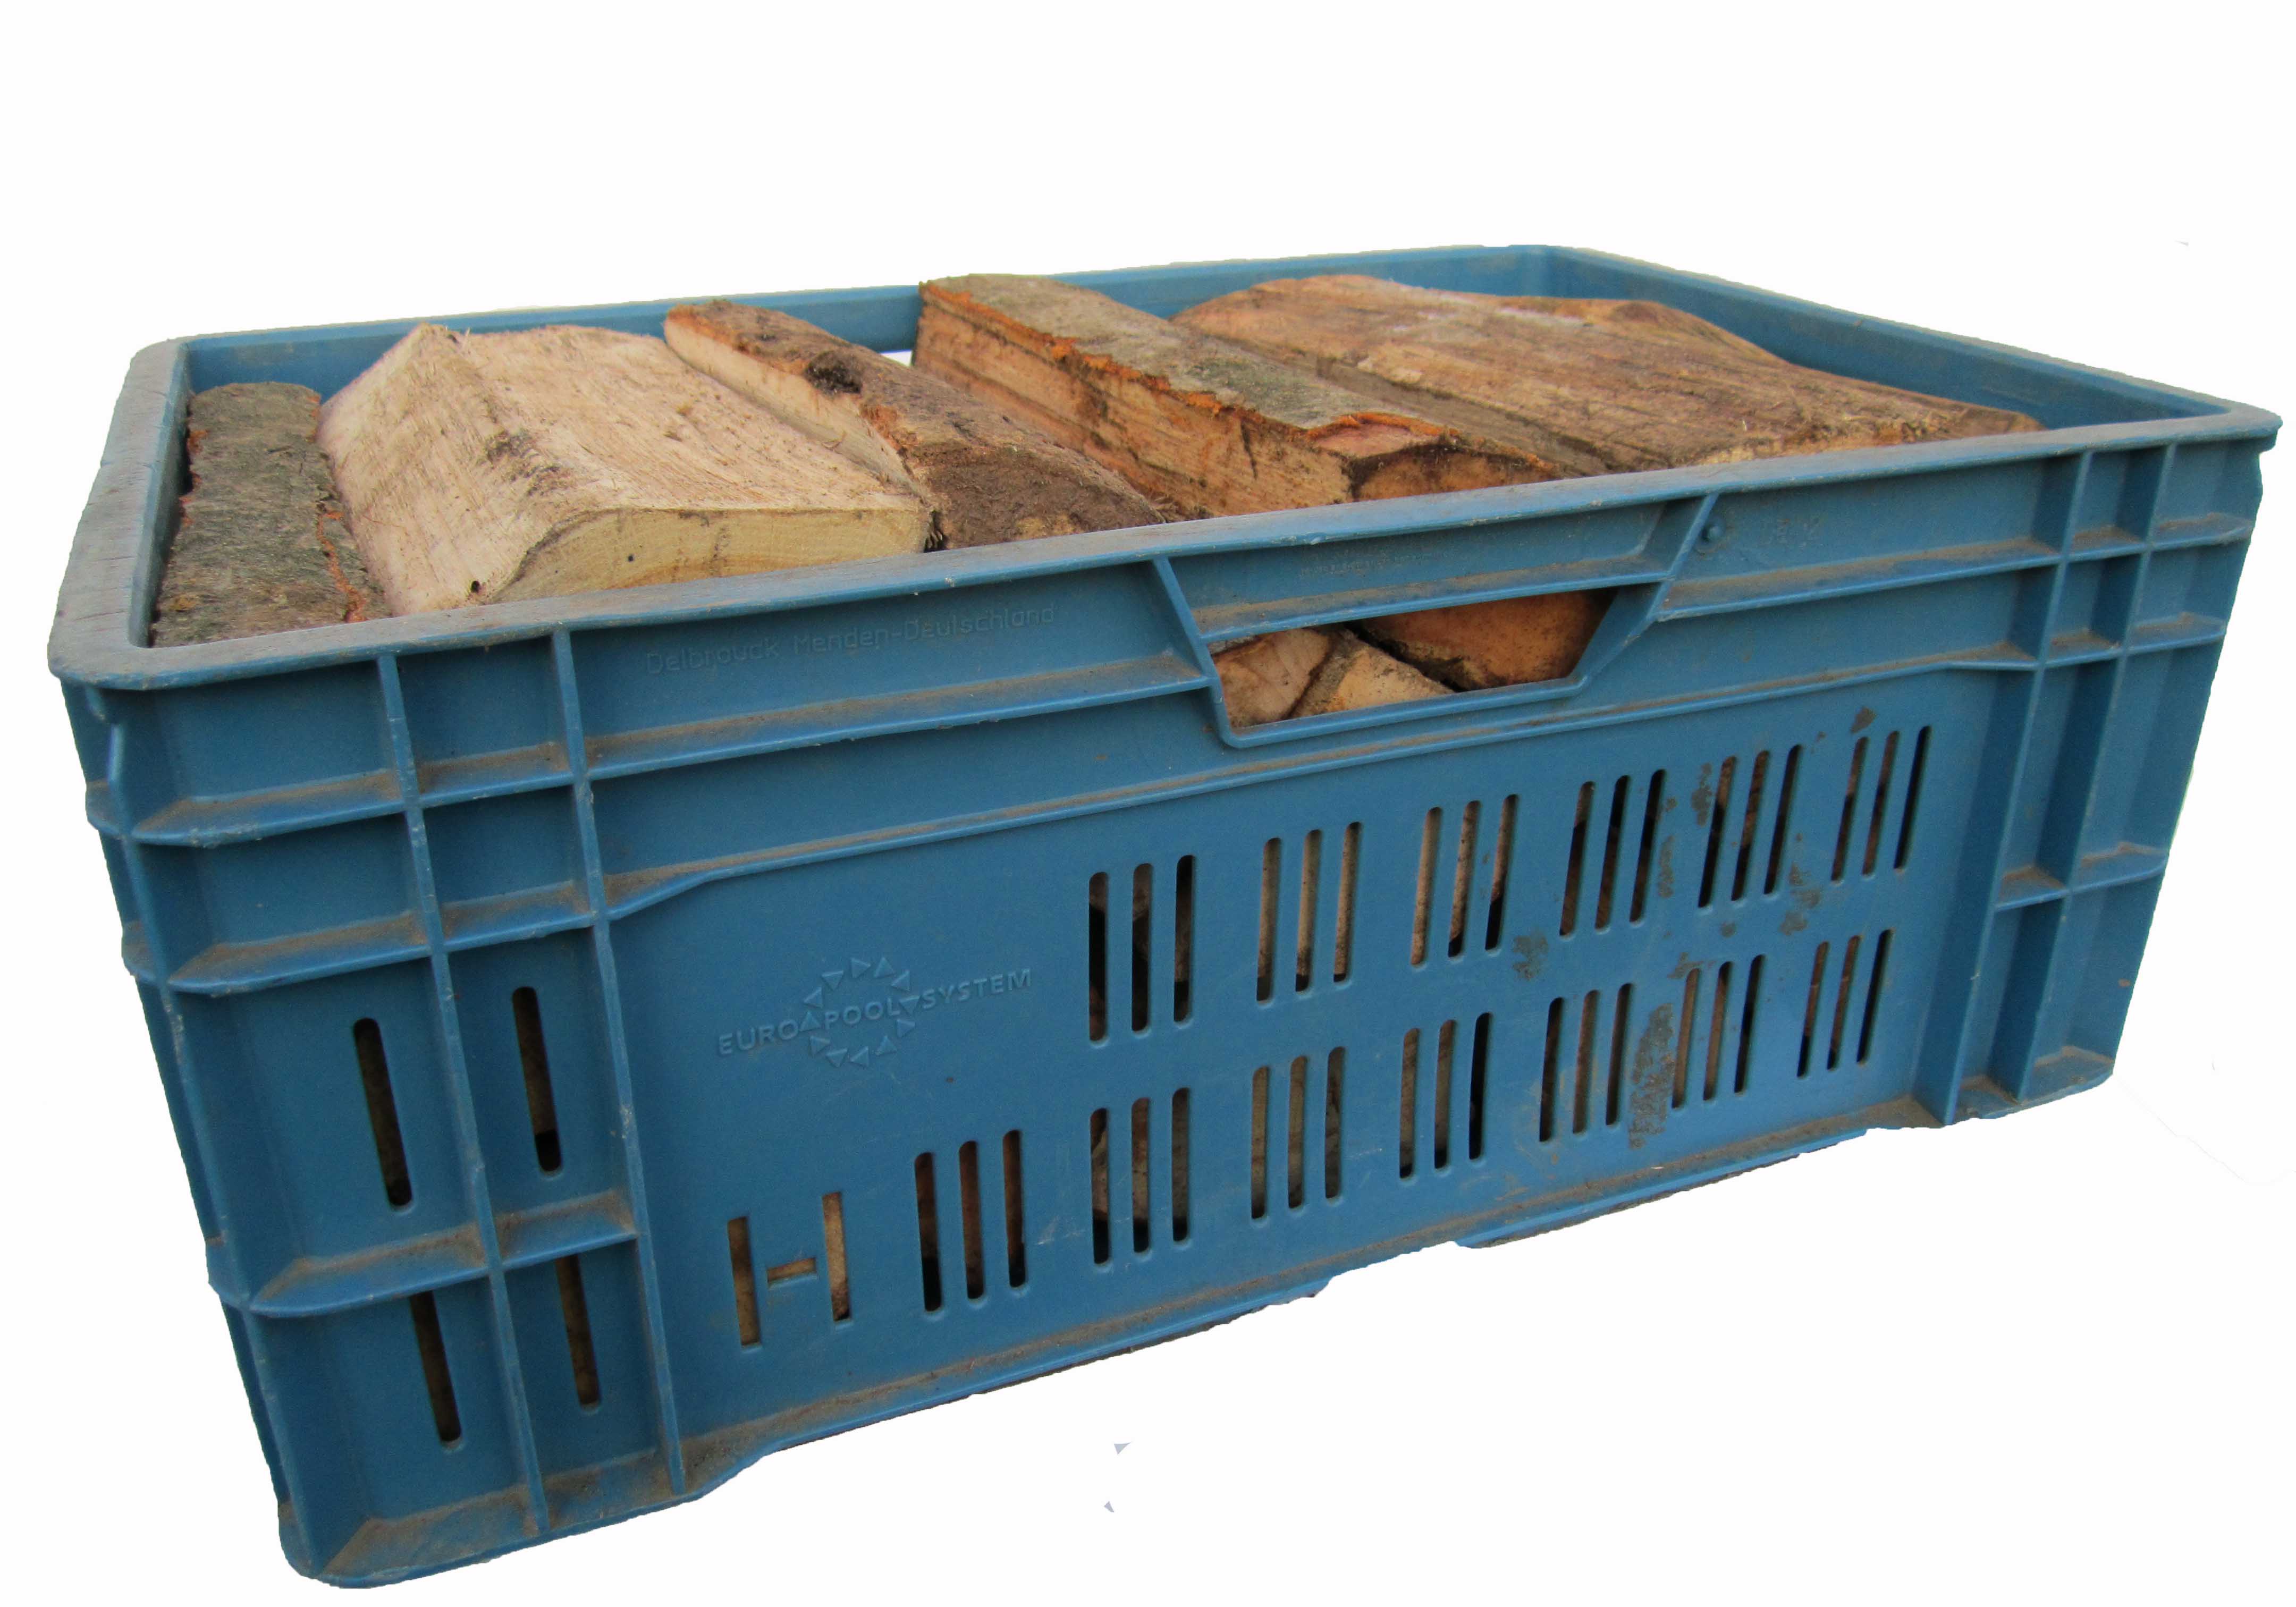 Zafido měkké palivové dřevo - 30-35 cm skládané- v přepravkách - 1 přepravka